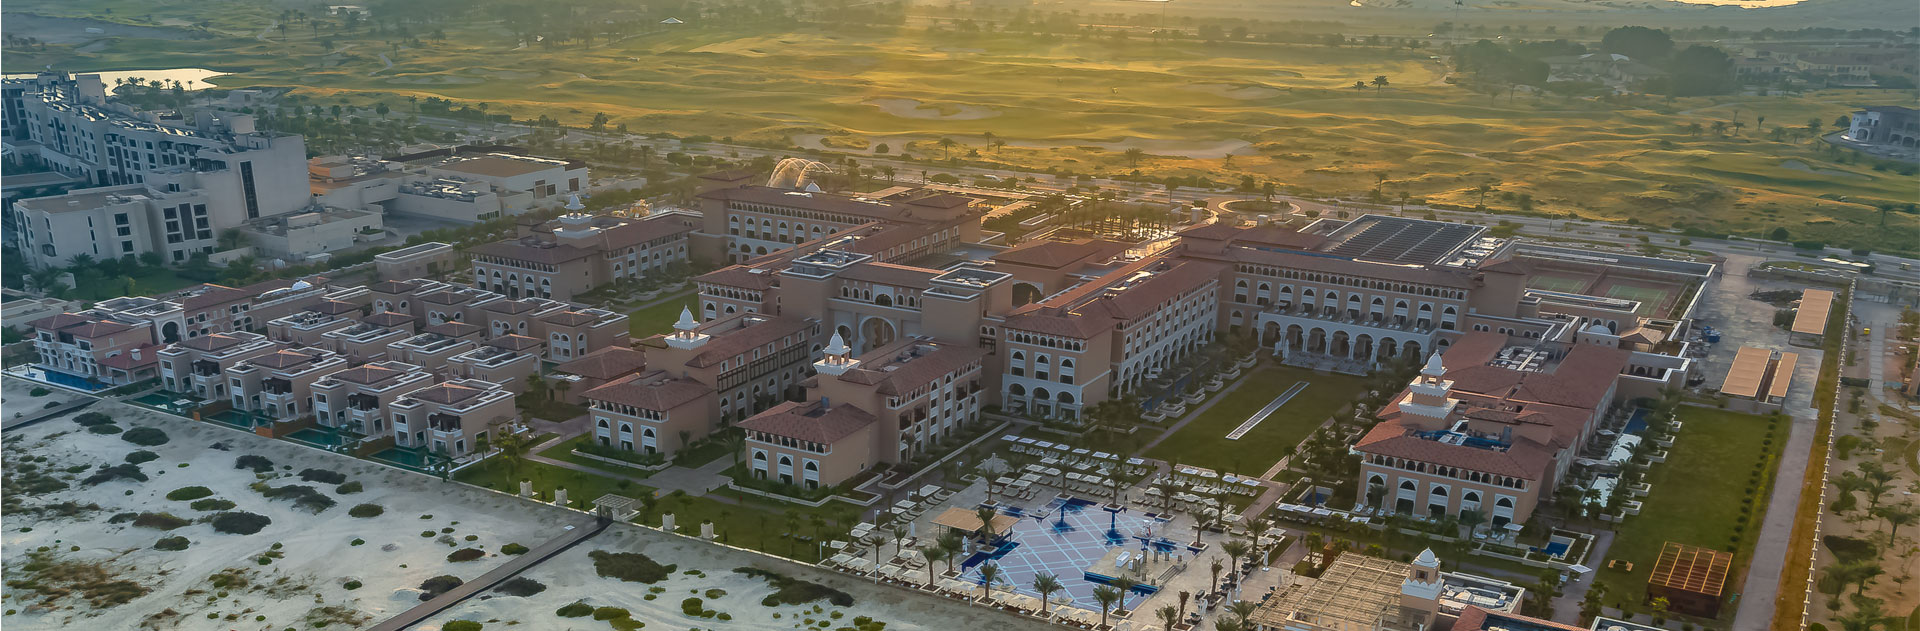 Hotel Rixos Abu Dhabi 1111